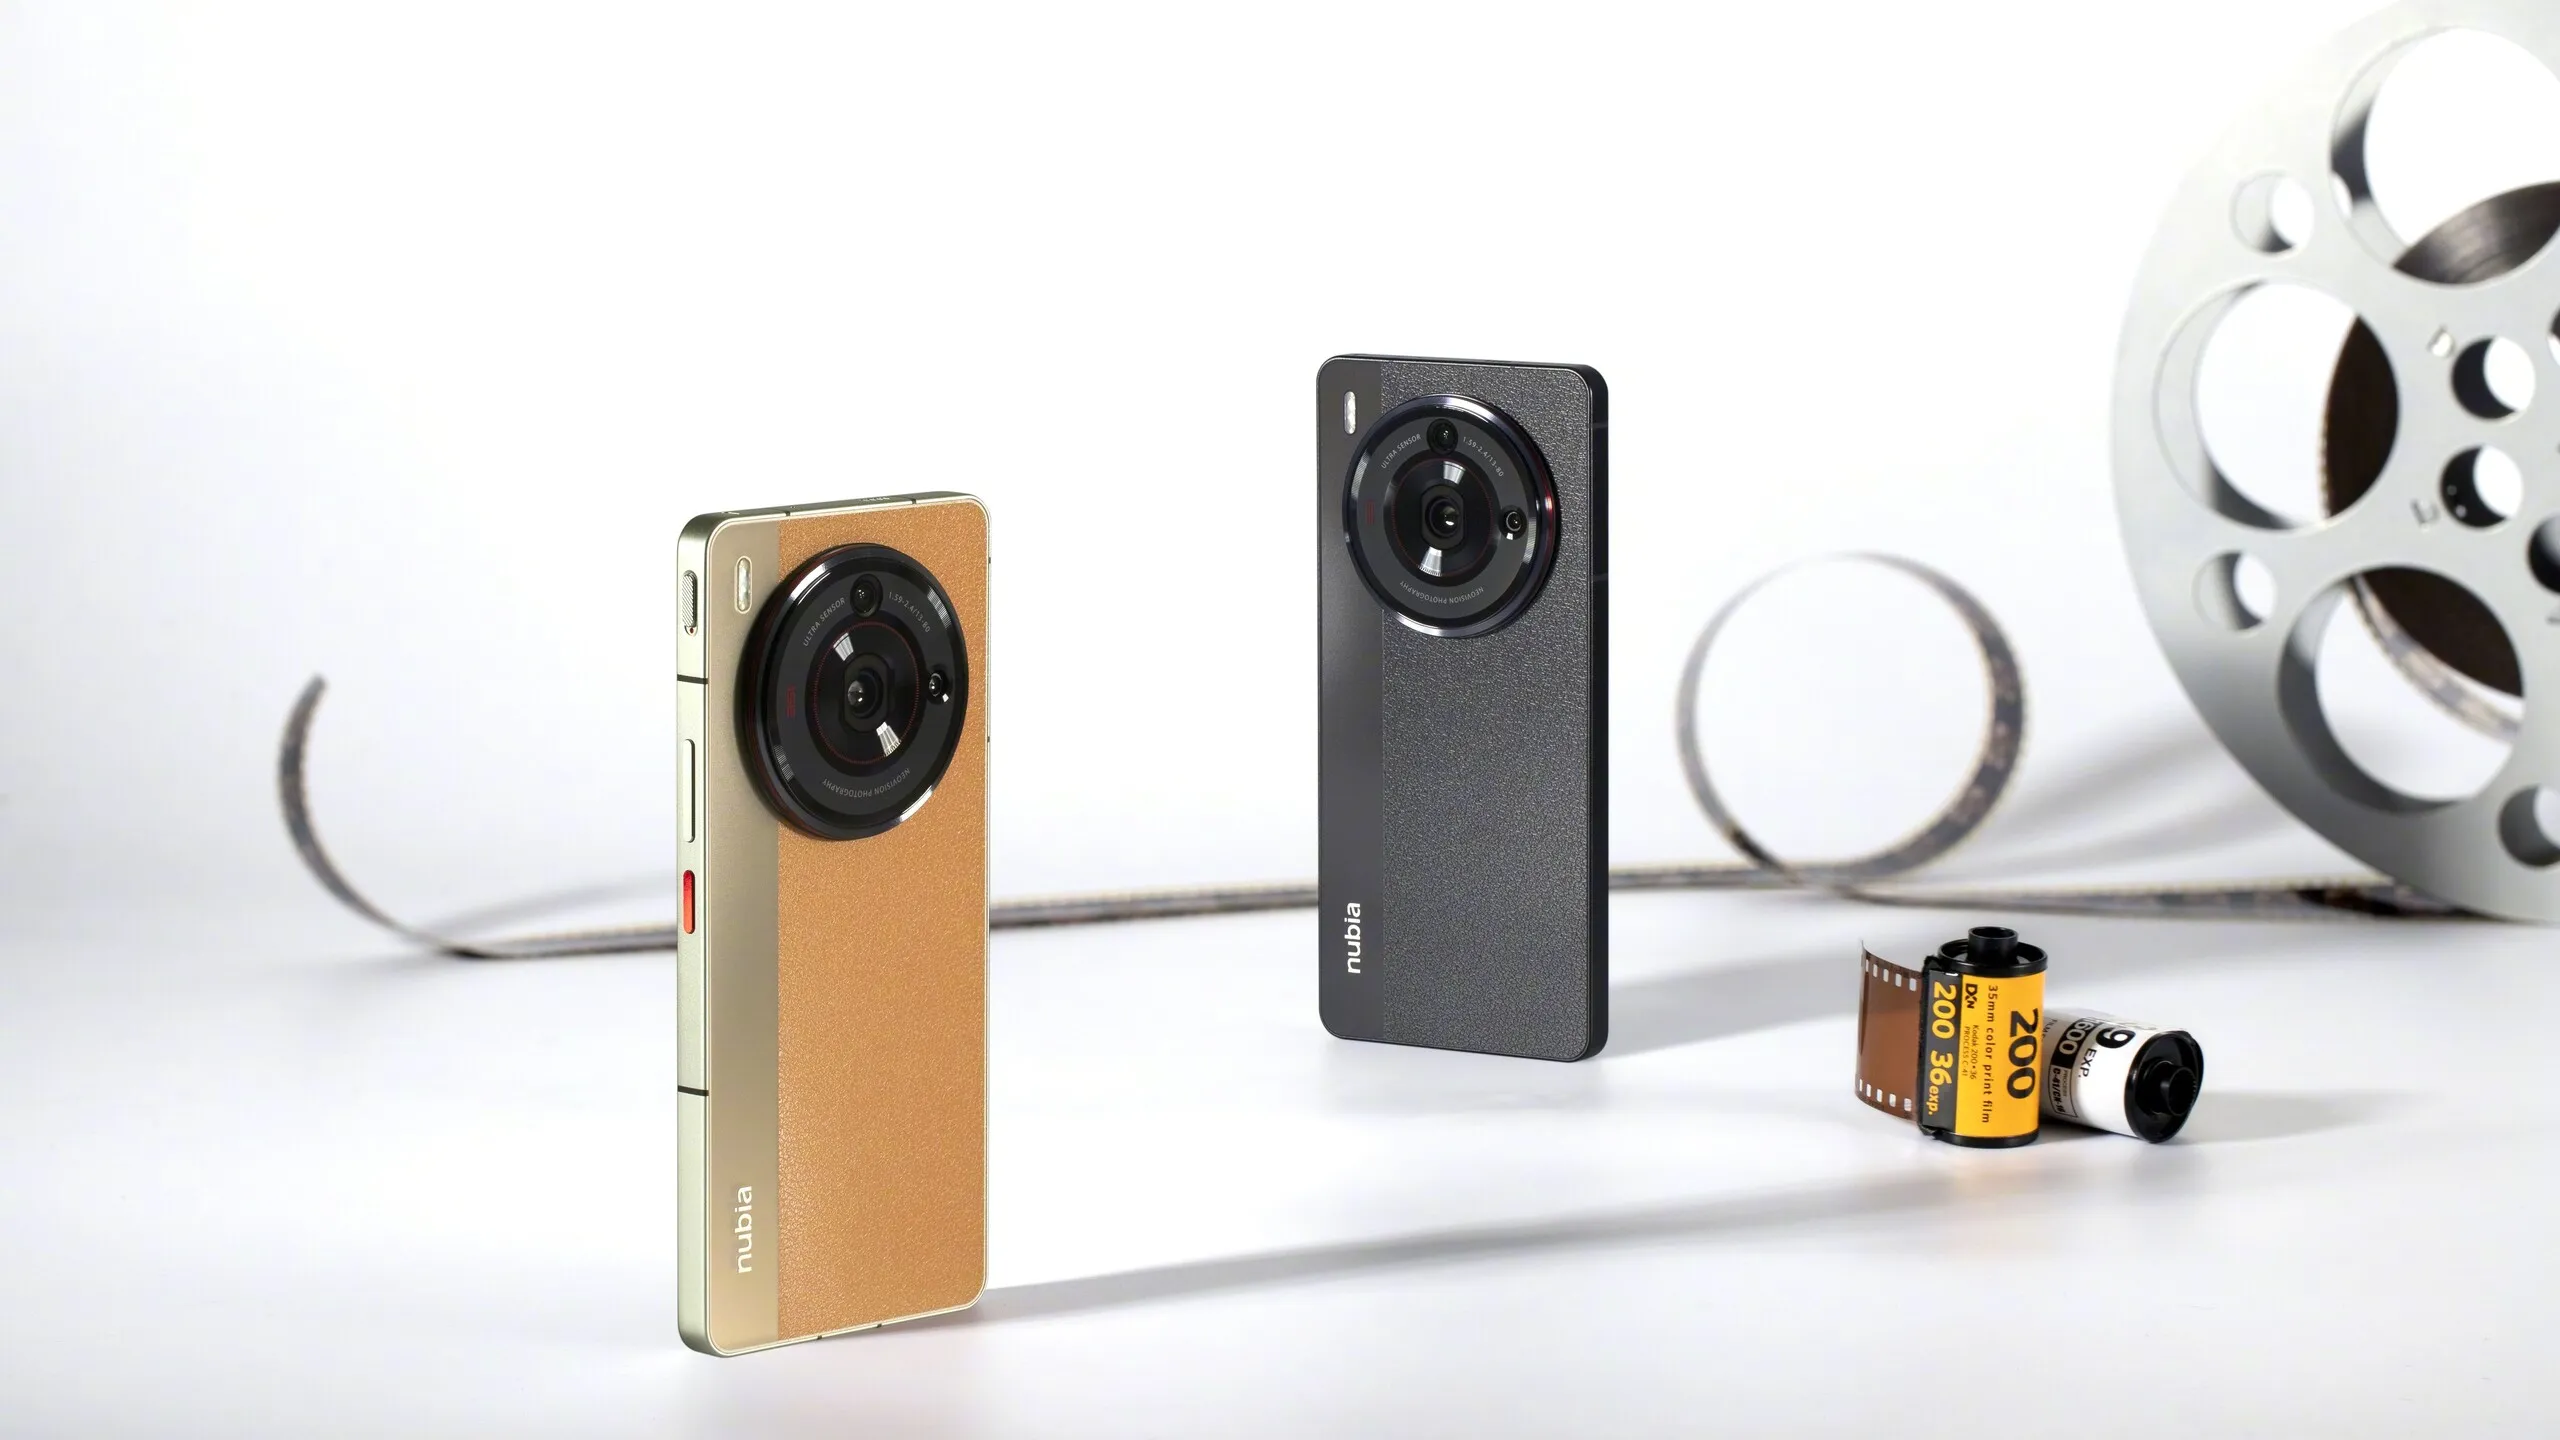 nubia Z50S Pro ra mắt với Snapdragon 8+ Gen 2 và camera ống kính 35mm